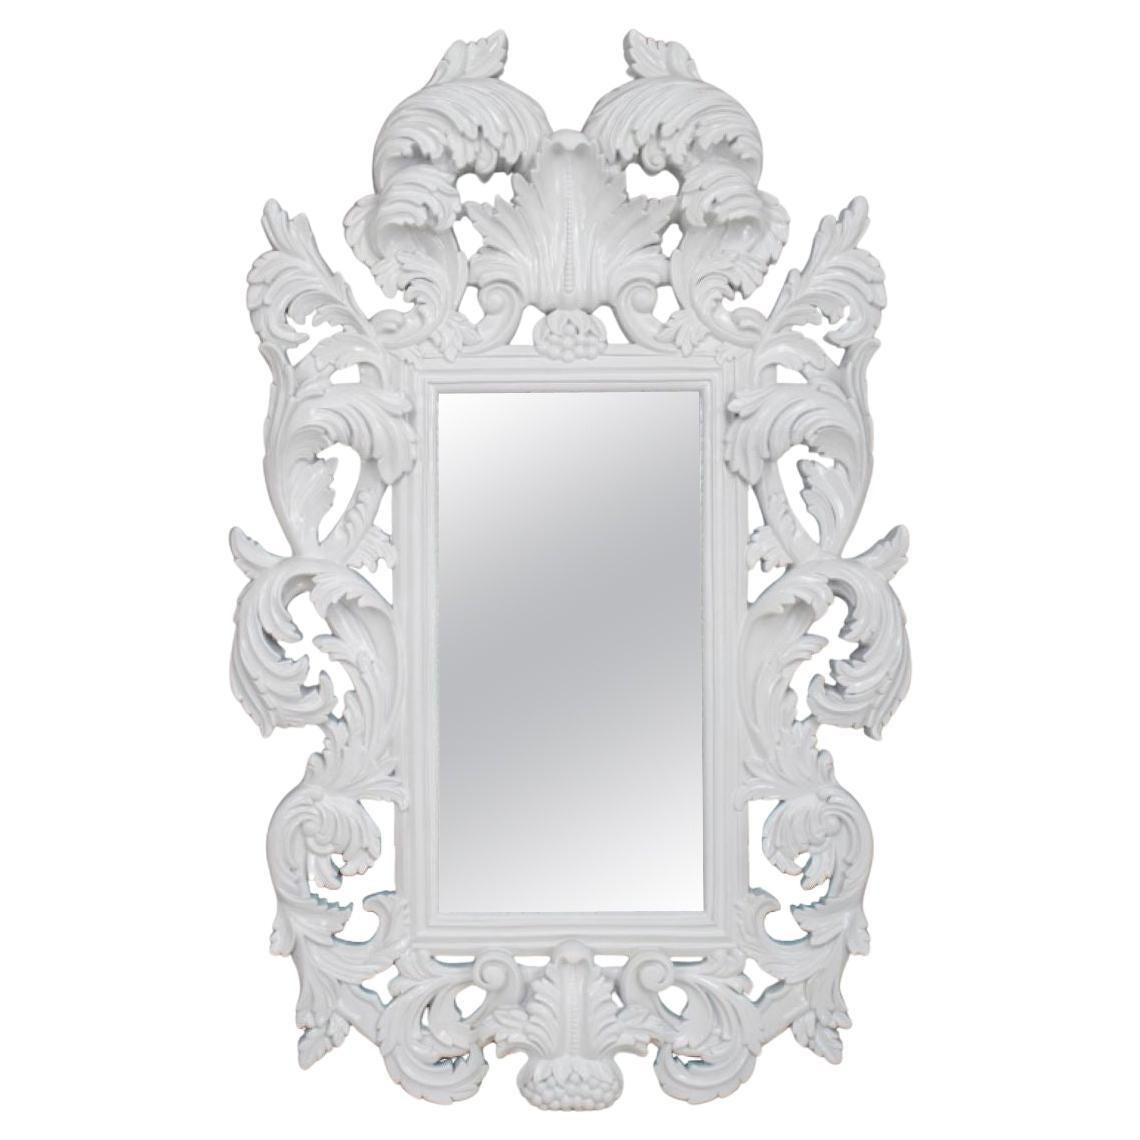 Rococo Revival White Lacquered Mirror For Sale